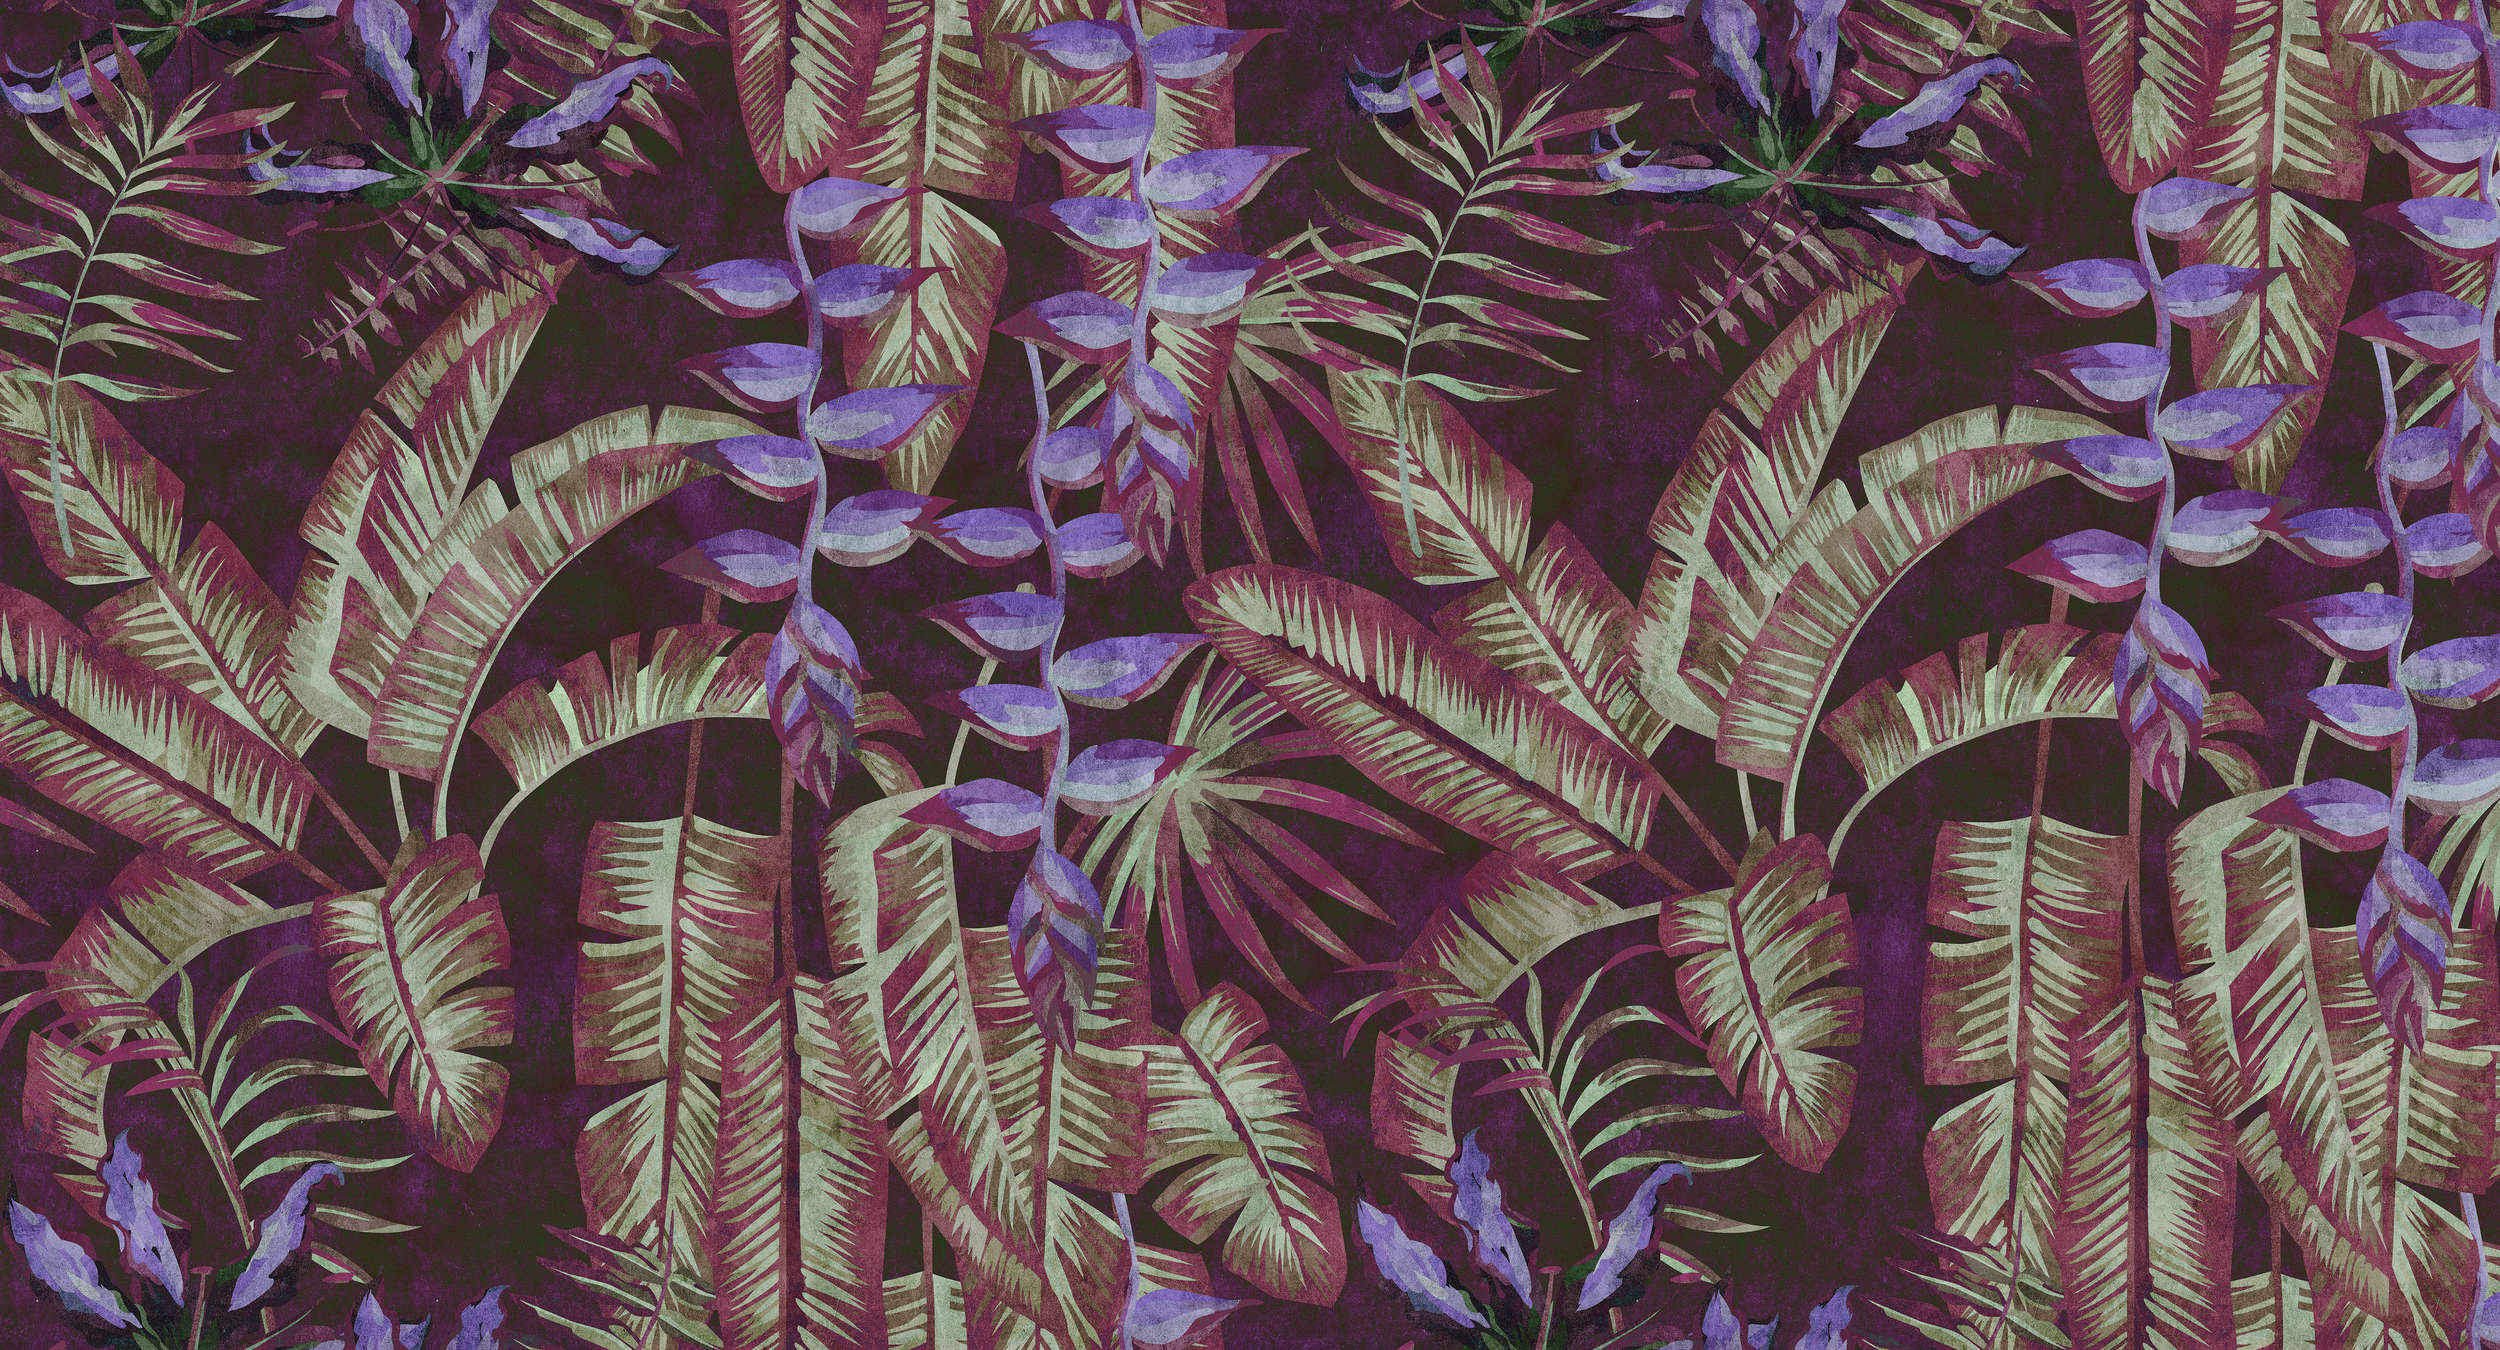             Tropicana 3 - Carta da parati tropicale con struttura in carta assorbente con foglie e felci - Rosso, Viola | Vello liscio opaco
        